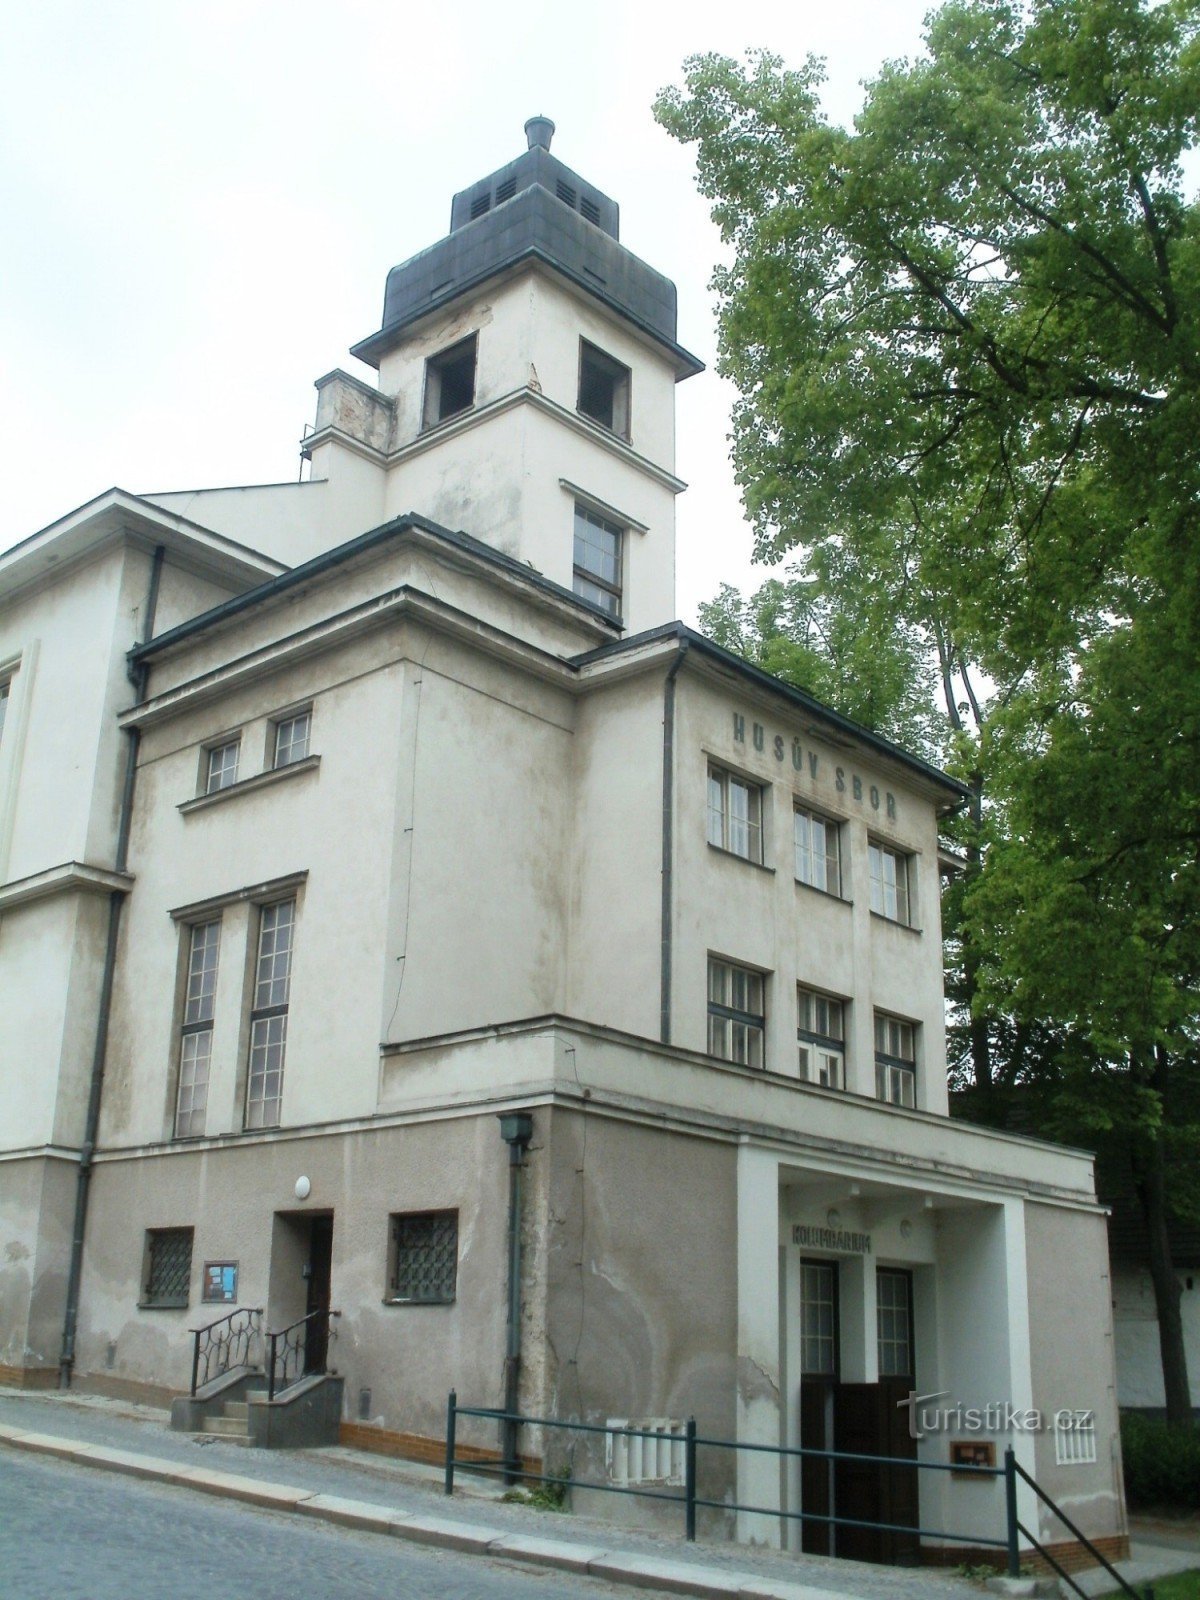 Havlíčkův Brod - biserica CS a Bisericii Husite